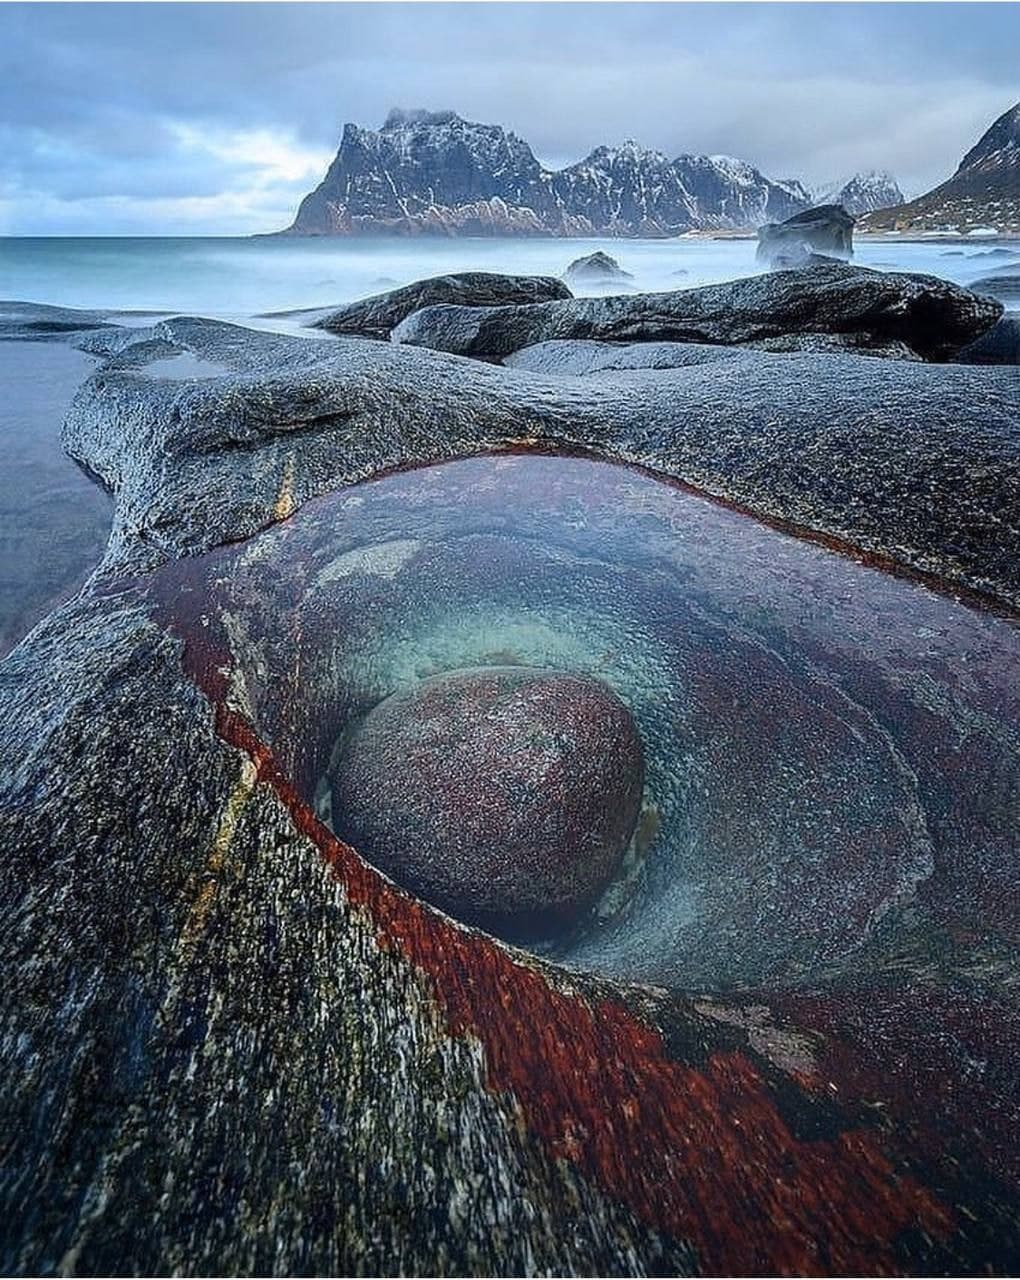 Глаз дракона на пляже Утакляйв на Лофотенских островах в Норвегии.